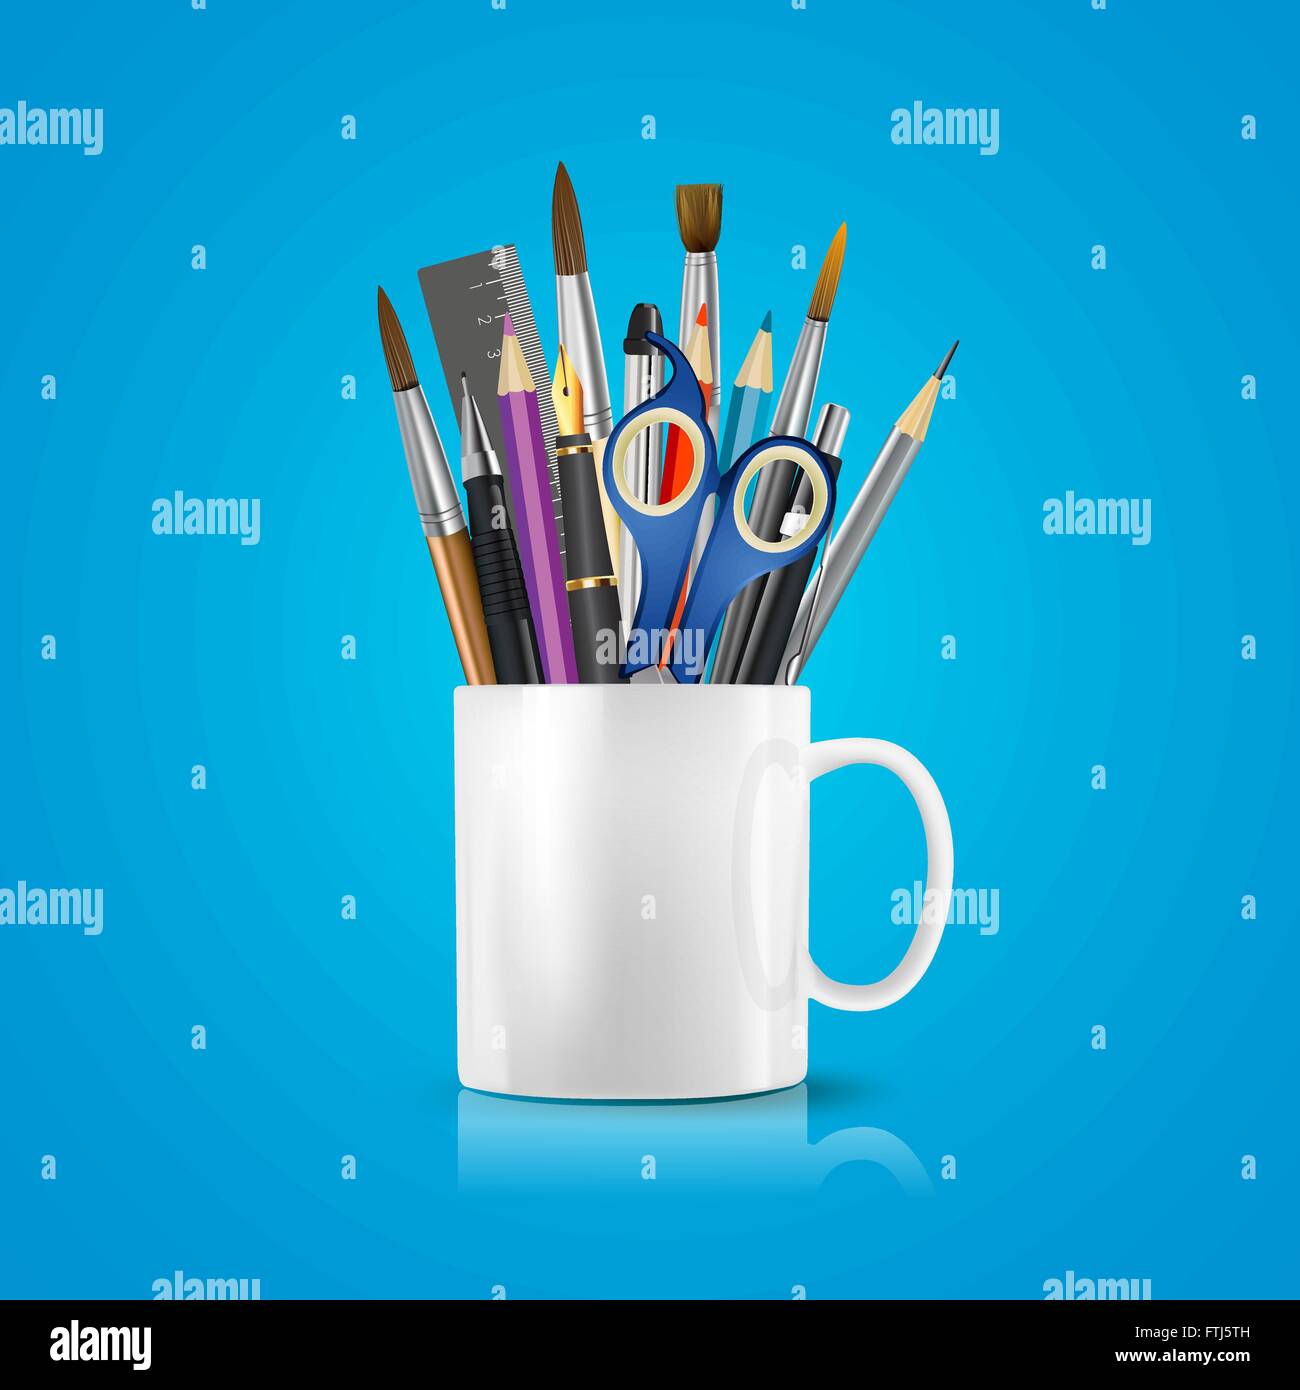 Realistische weiße Tasse mit Büromaterial, Bleistifte, Stifte, Schere, Lineal, Pinsel. Konzeptionelle Vektorbild des Bürolebens Stock Vektor